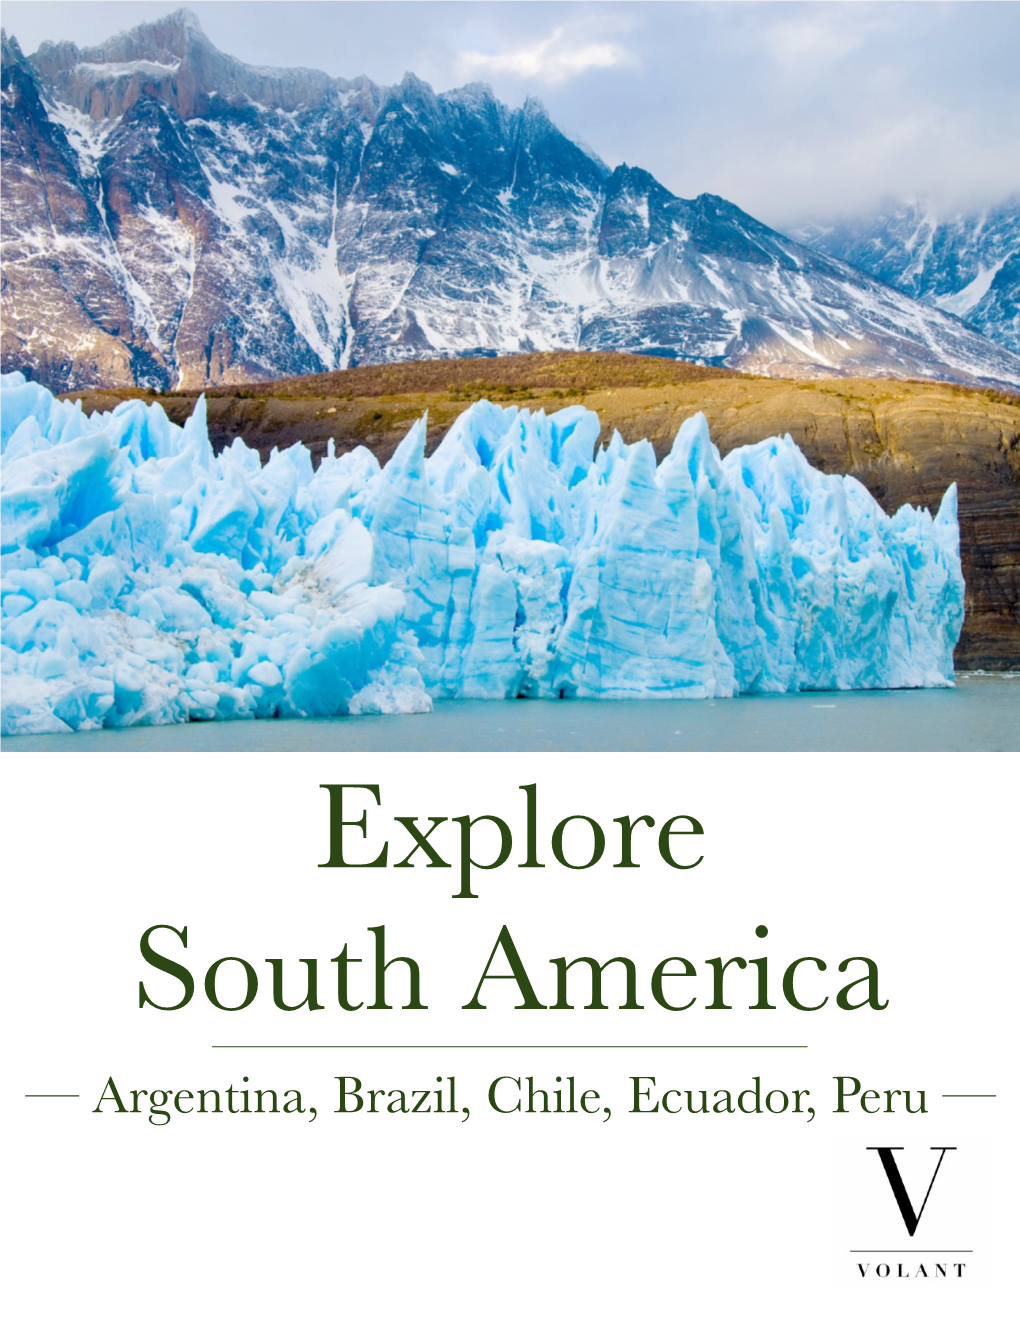 Explore South America — Argentina, Brazil, Chile, Ecuador, Peru — TOUR DETAILS